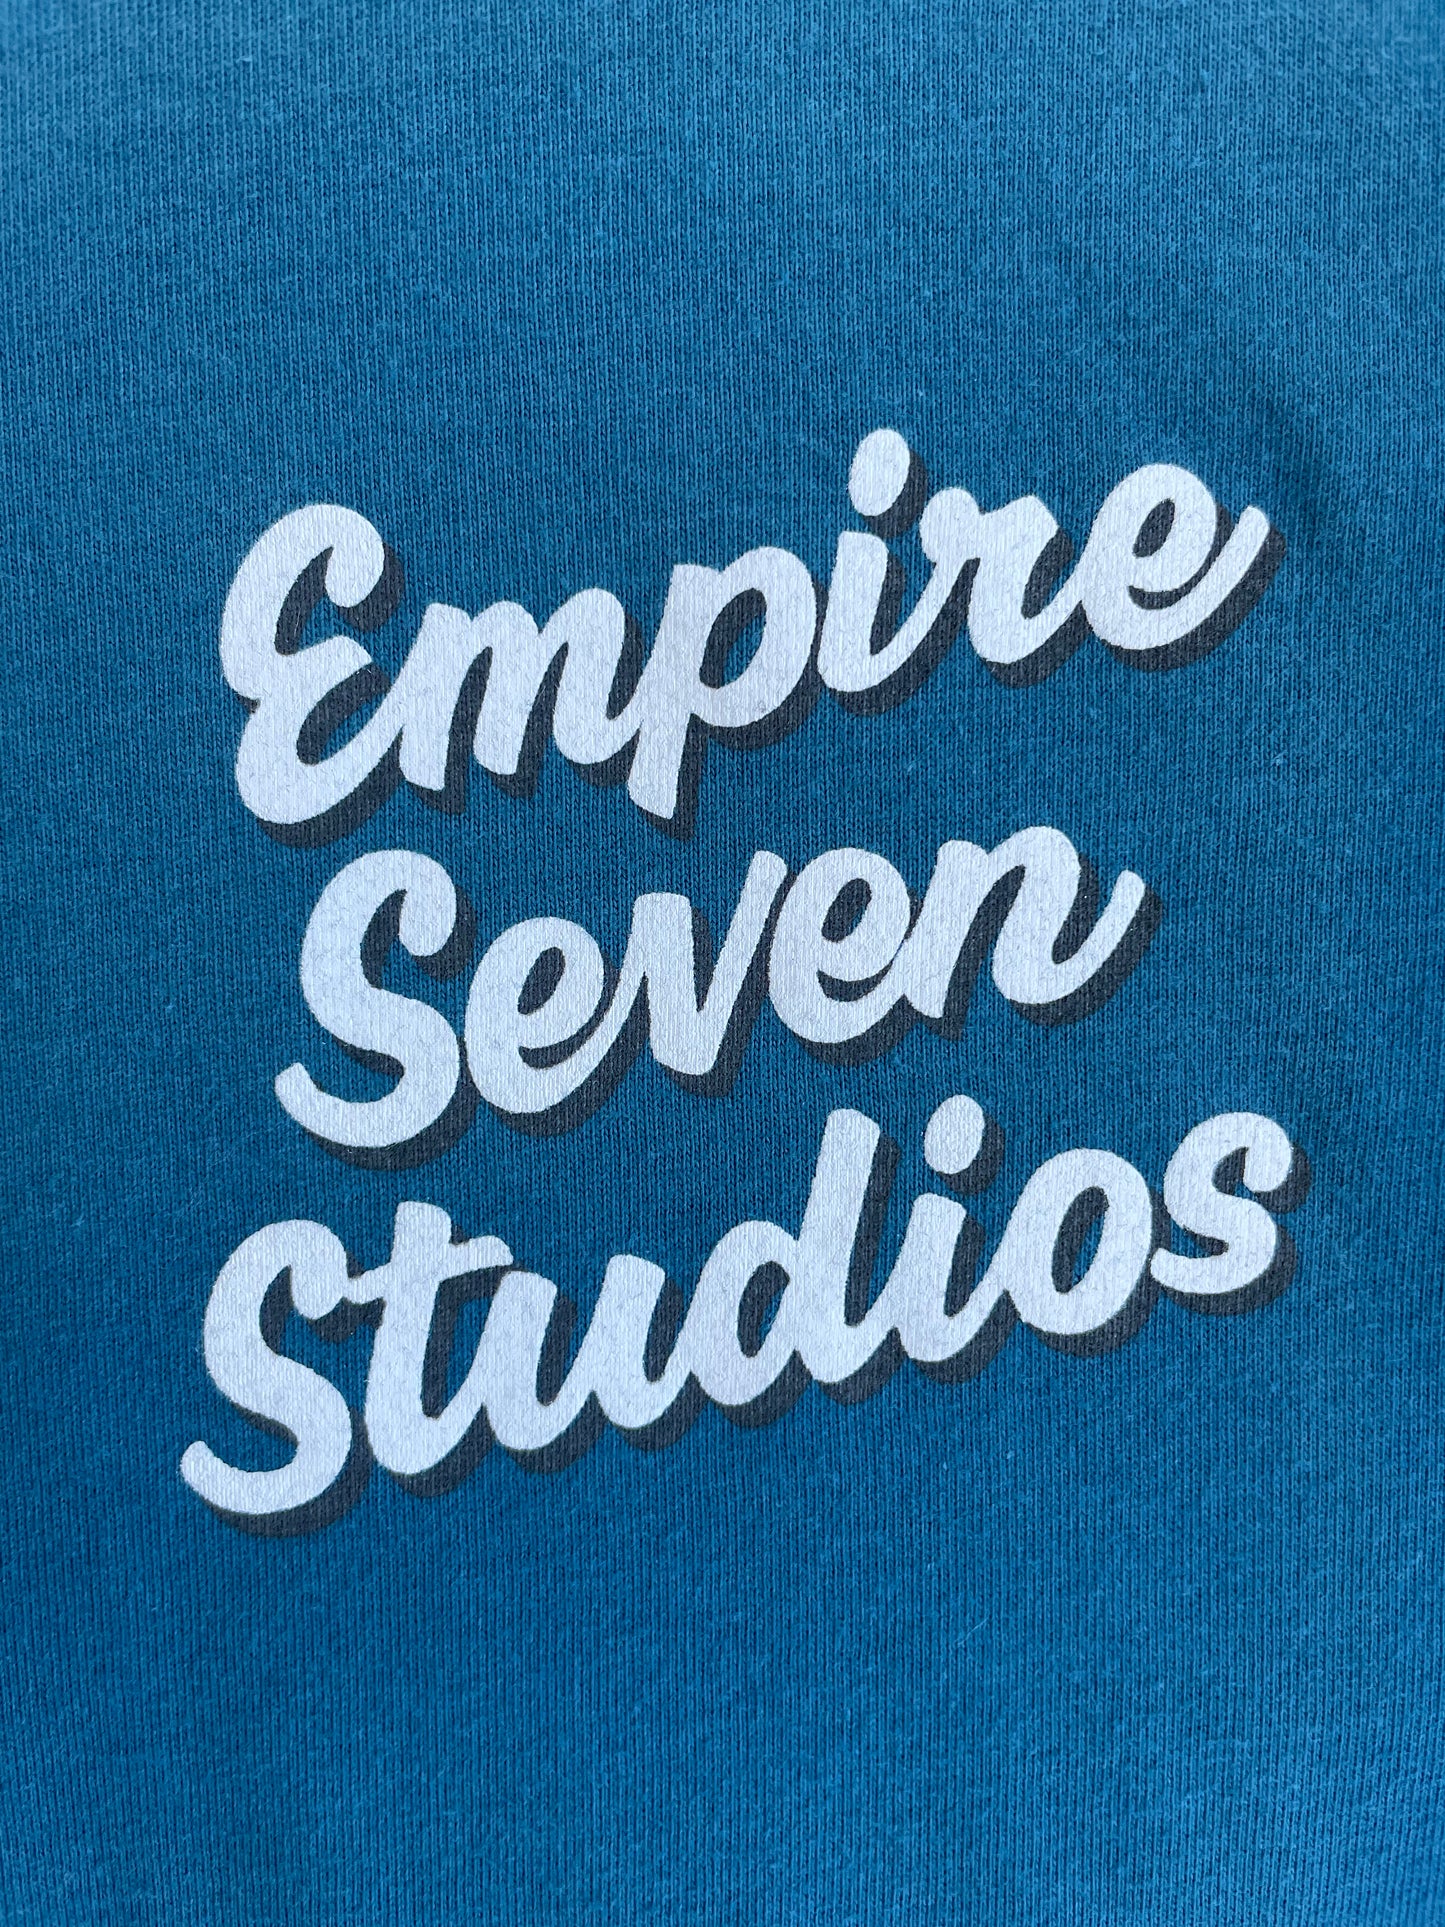 Empire Seven Studios Tshirt Unisex (Colors)